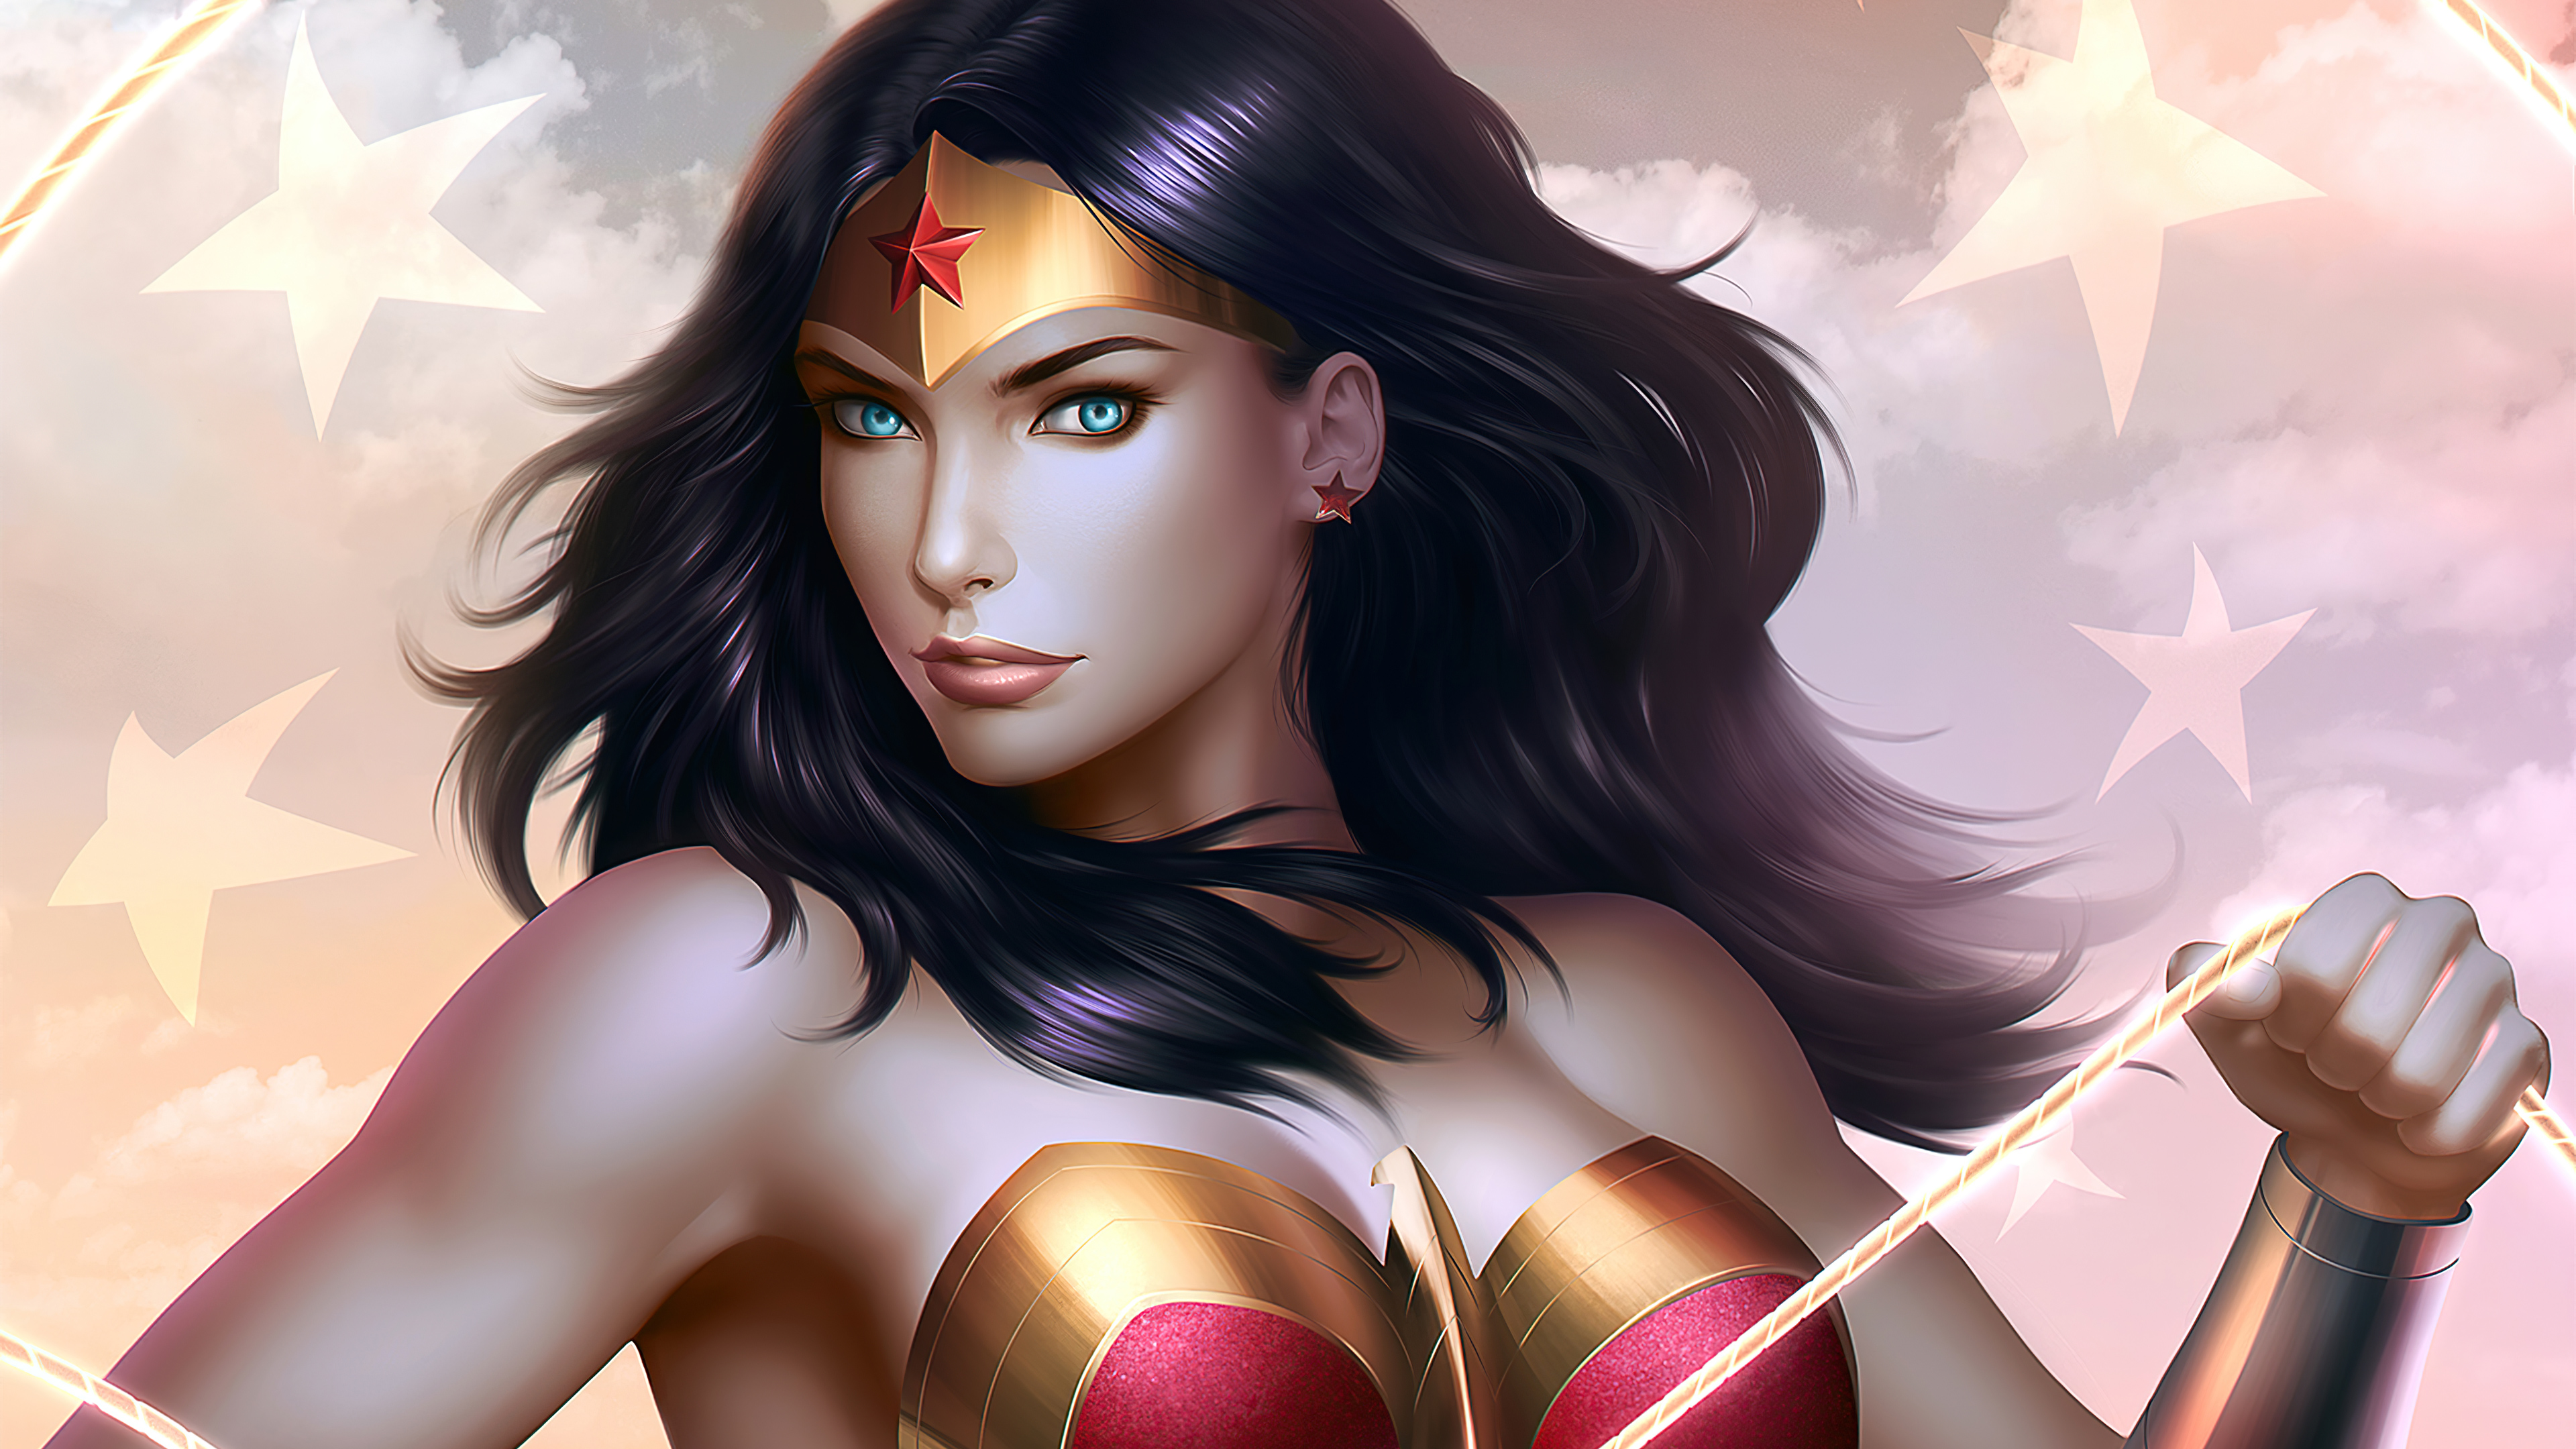 Wallpapers Wonder Woman superheroes artwork on the desktop